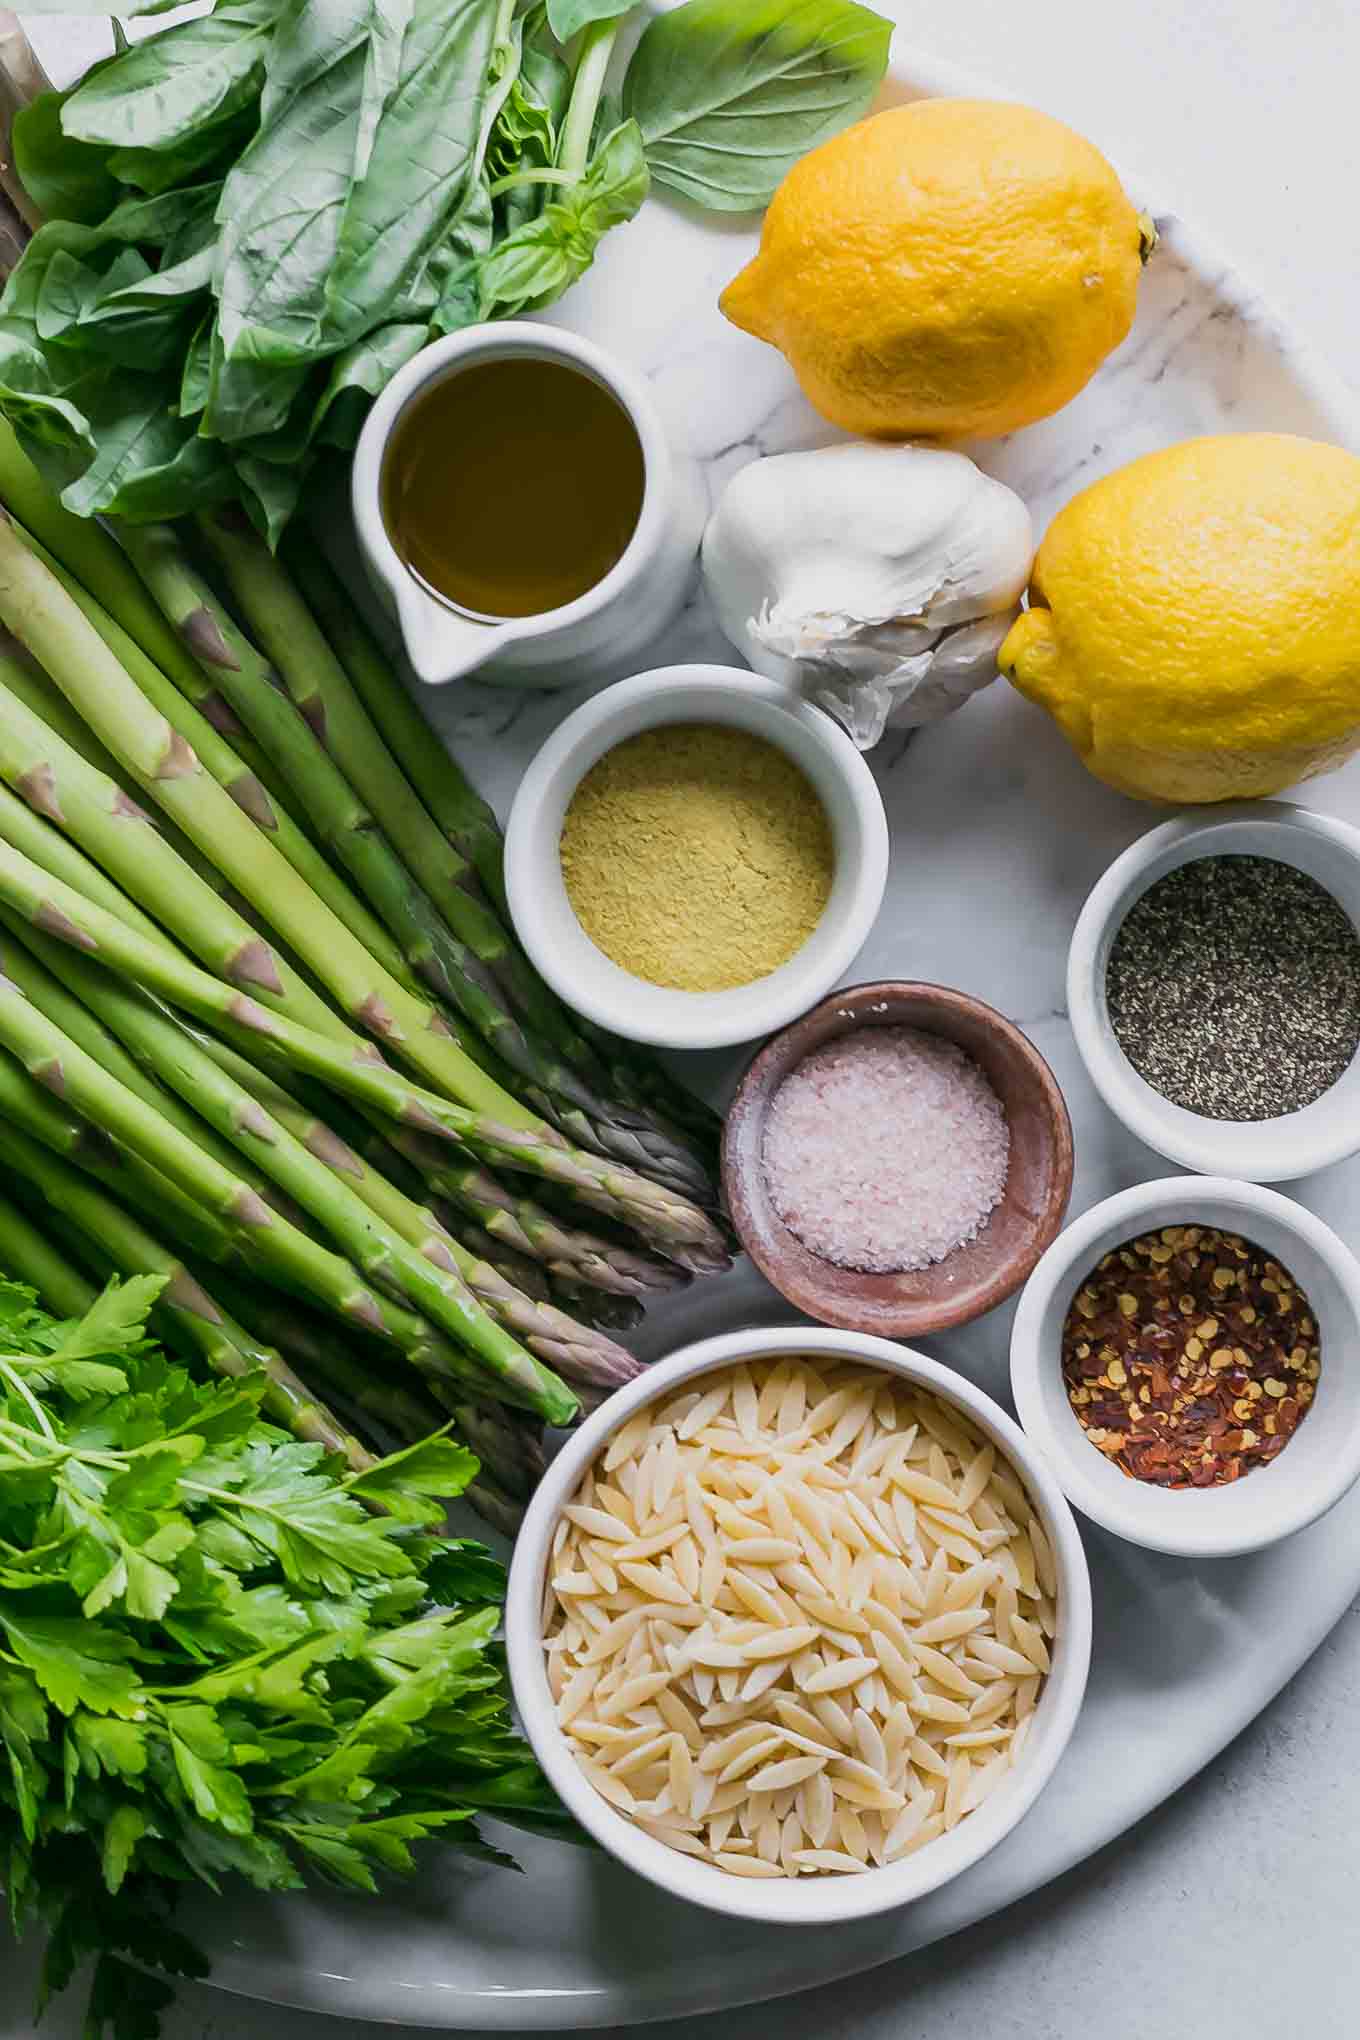 asparagus, basil, parsley, lemons, garlic, and bowls of orzo and seasonings for orzo pasta